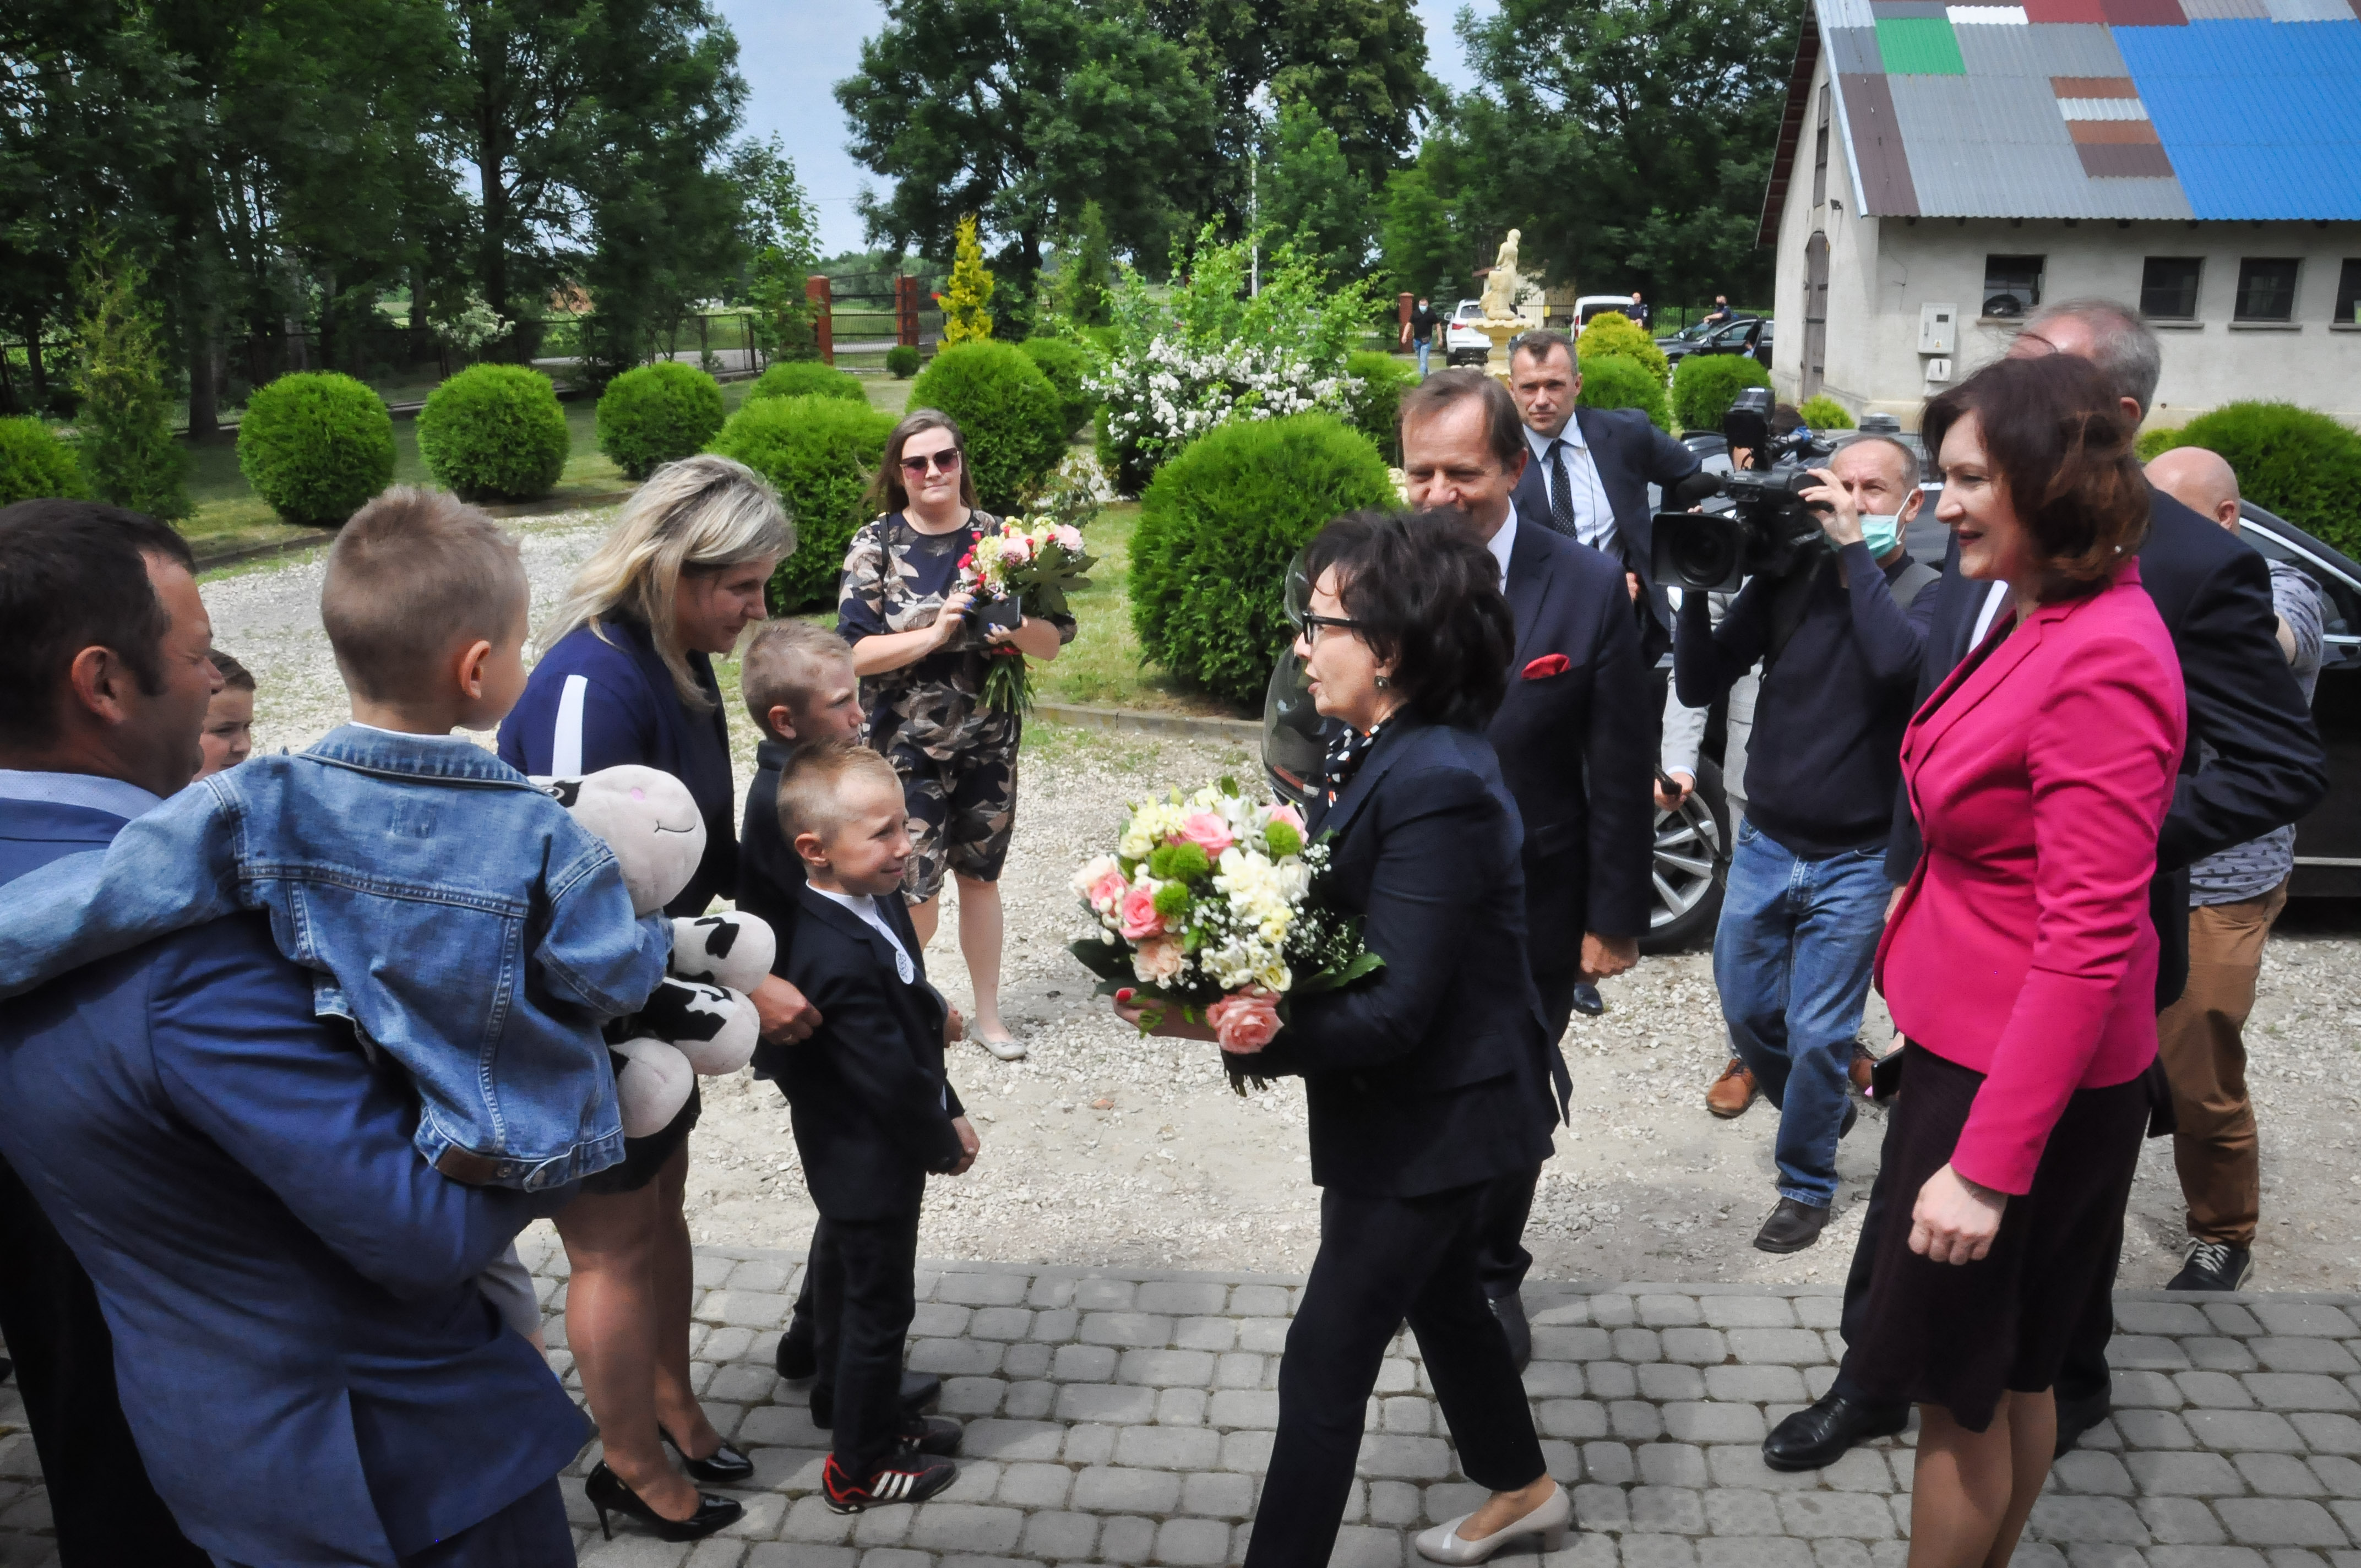 Marszałek Sejmu w Rożniatach. Przyjechała na zaproszenie jednej z rodzin [FOTO] - Zdjęcie główne